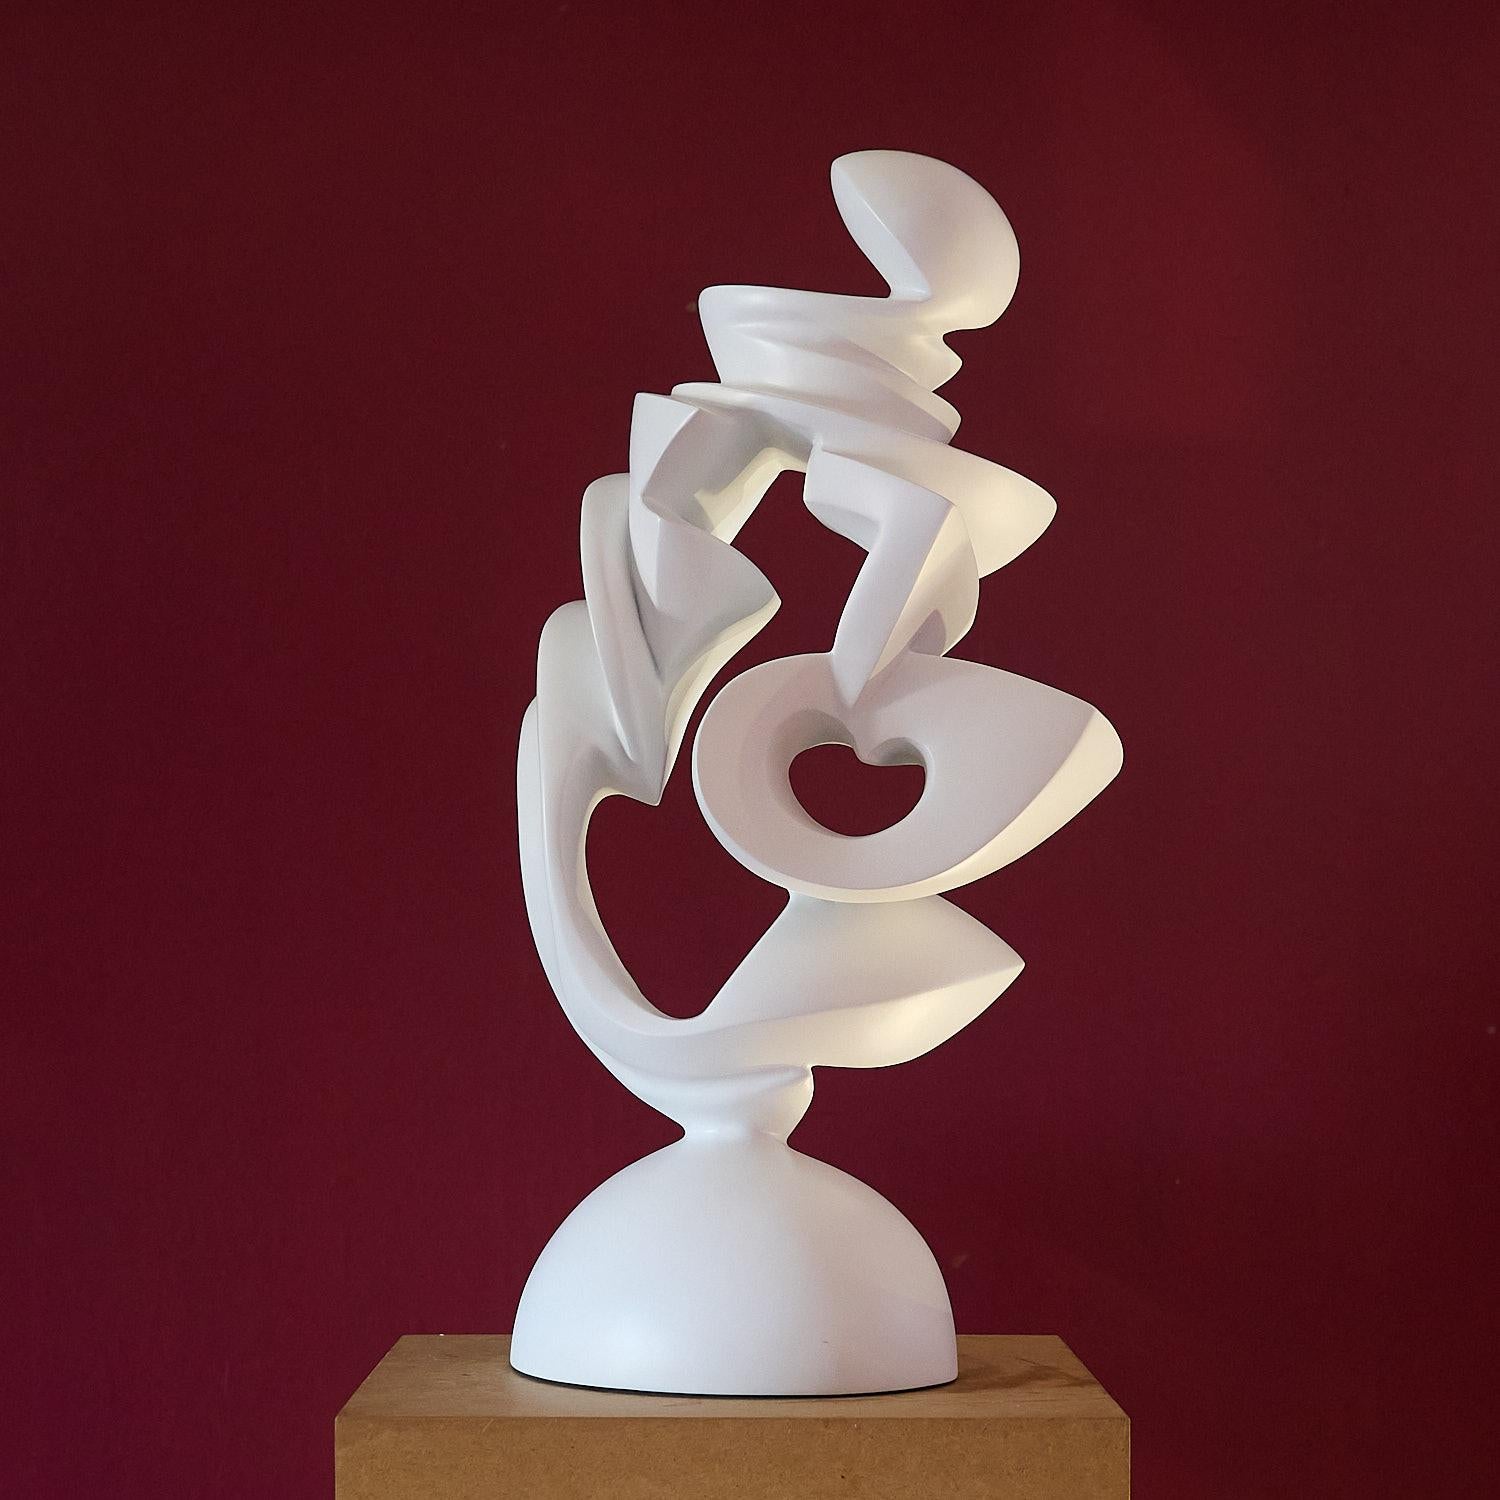 Abstract Sculpture Jan Willem Krijger - Expansion du cœur , art moderne sculpture contemporaine 21e siècle